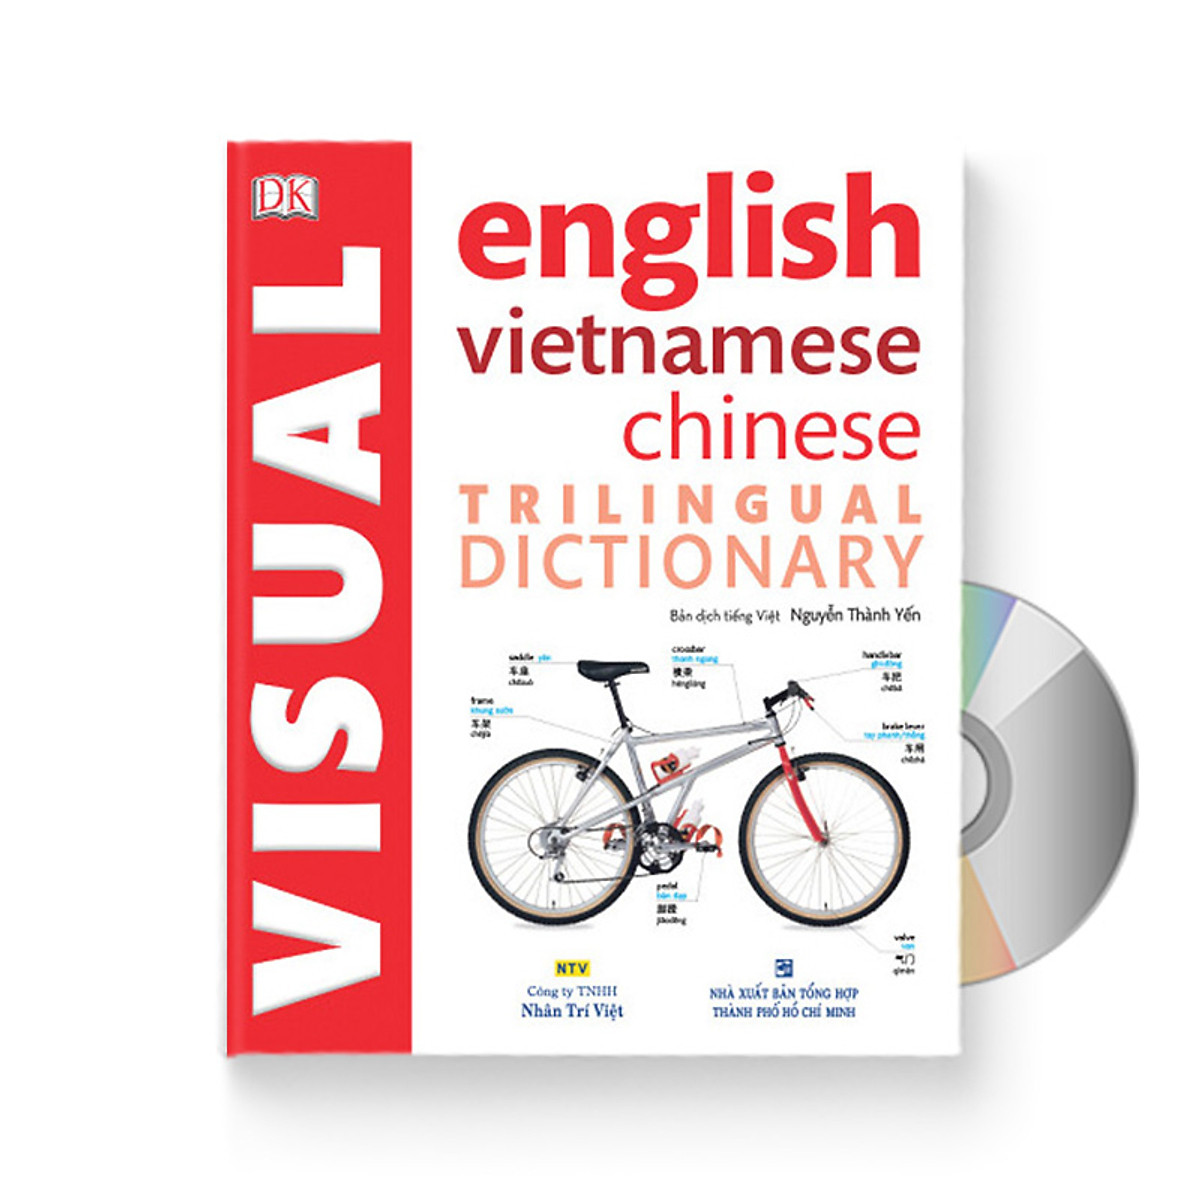 Từ điển hình ảnh Tam Ngữ Trung Anh Việt – Visual English Vietnamese Chinese Trilingual Dictionary + DVD quà tặng